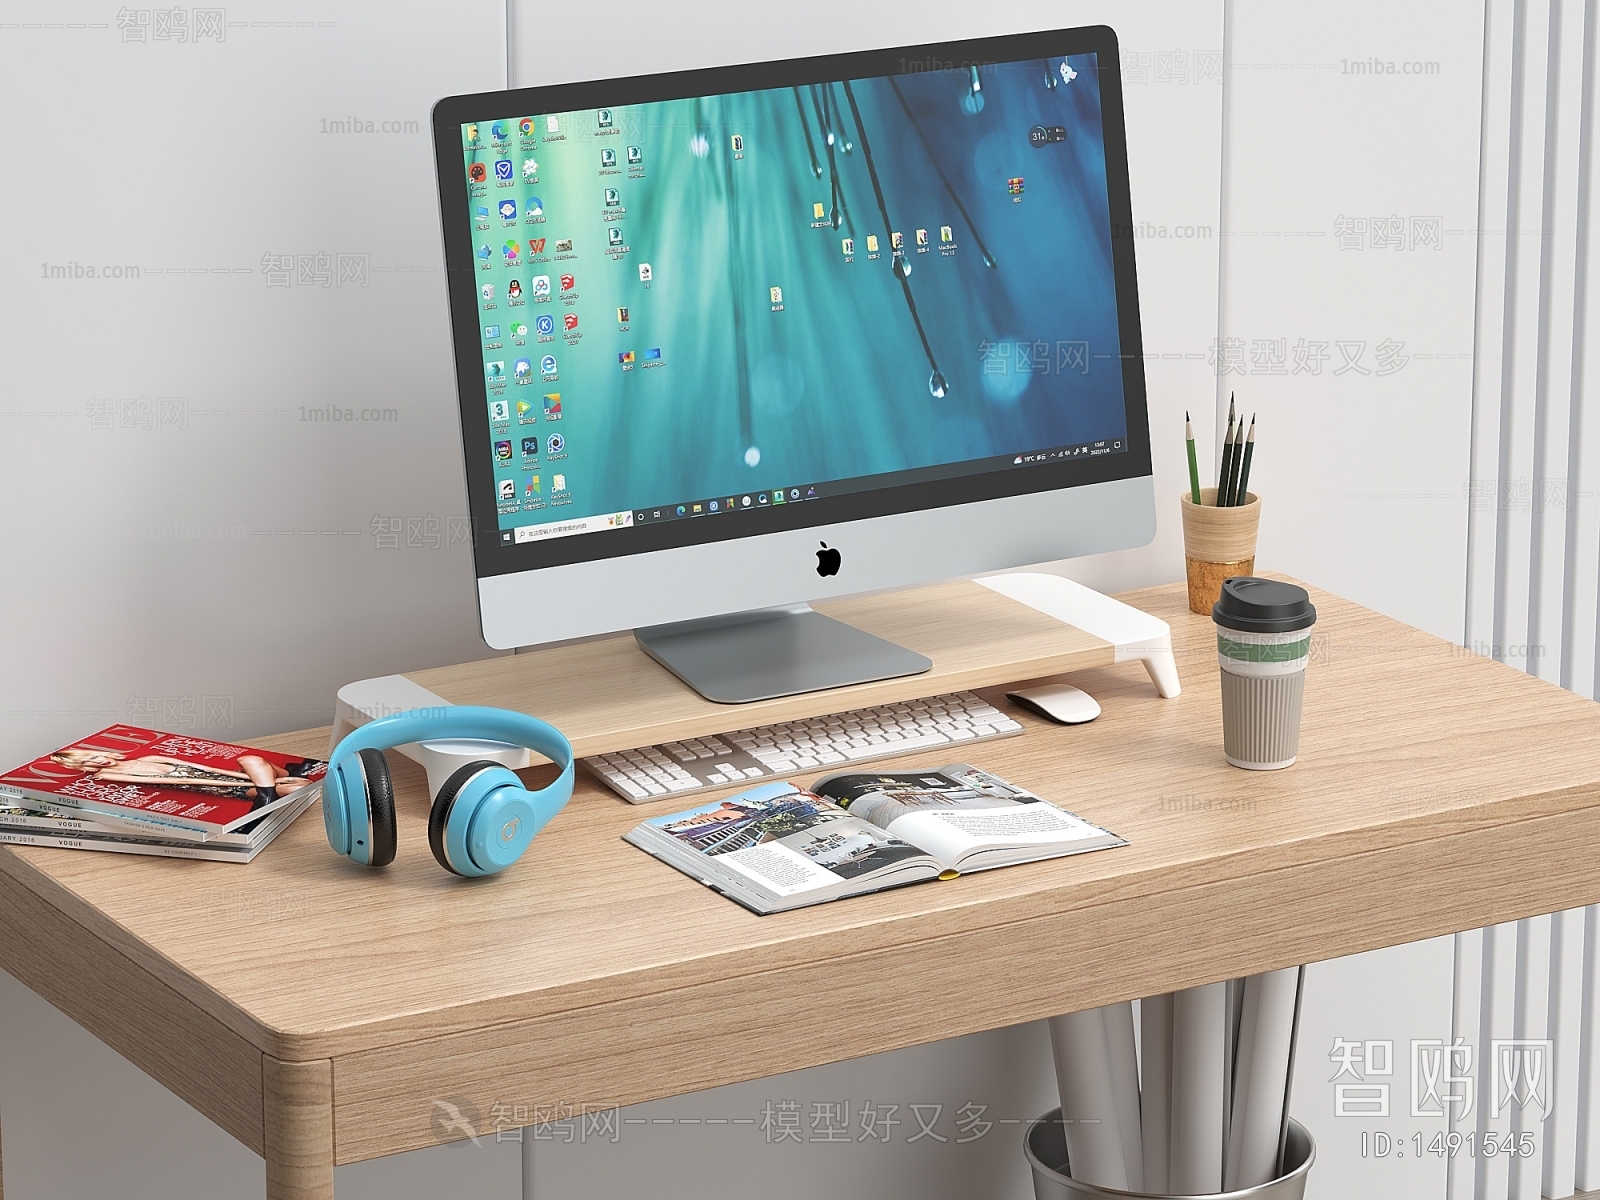 现代苹果电脑 显示器 键盘 鼠标 头戴式耳机 书桌